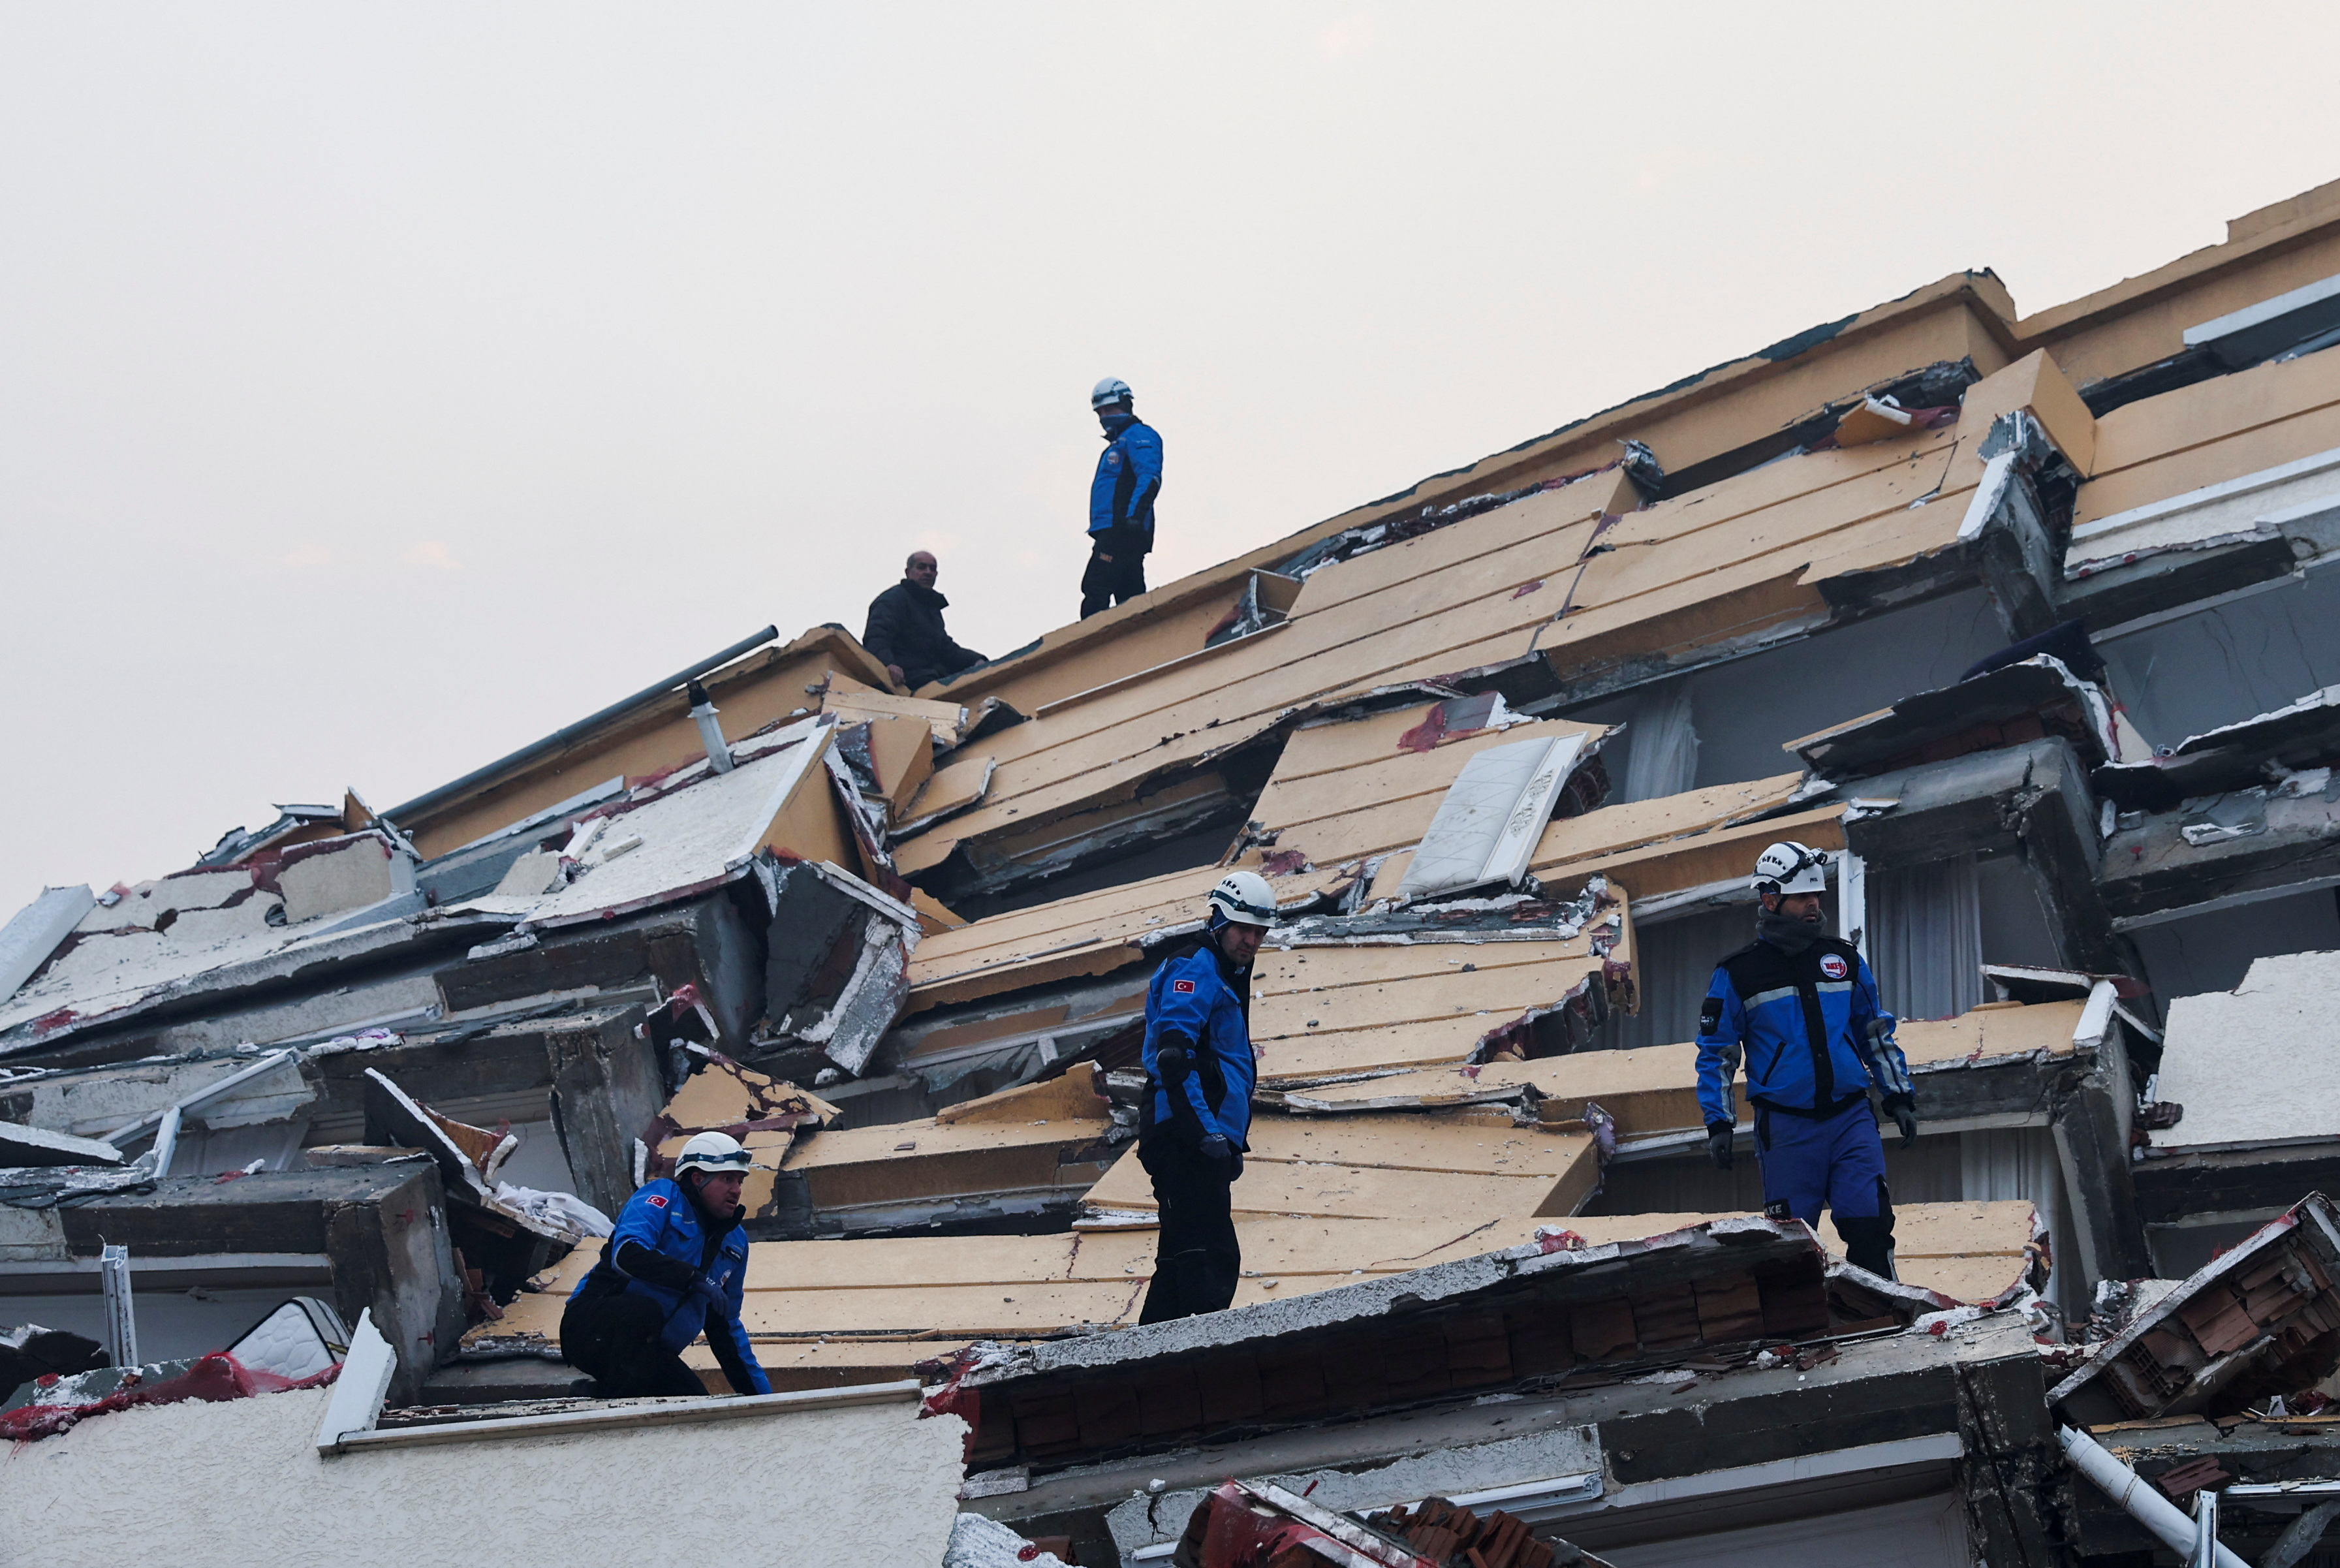 Rescatistas continúan sus labores entre los escombros de miles de edificios derrumbados. (REUTERS/Umit Bektas)